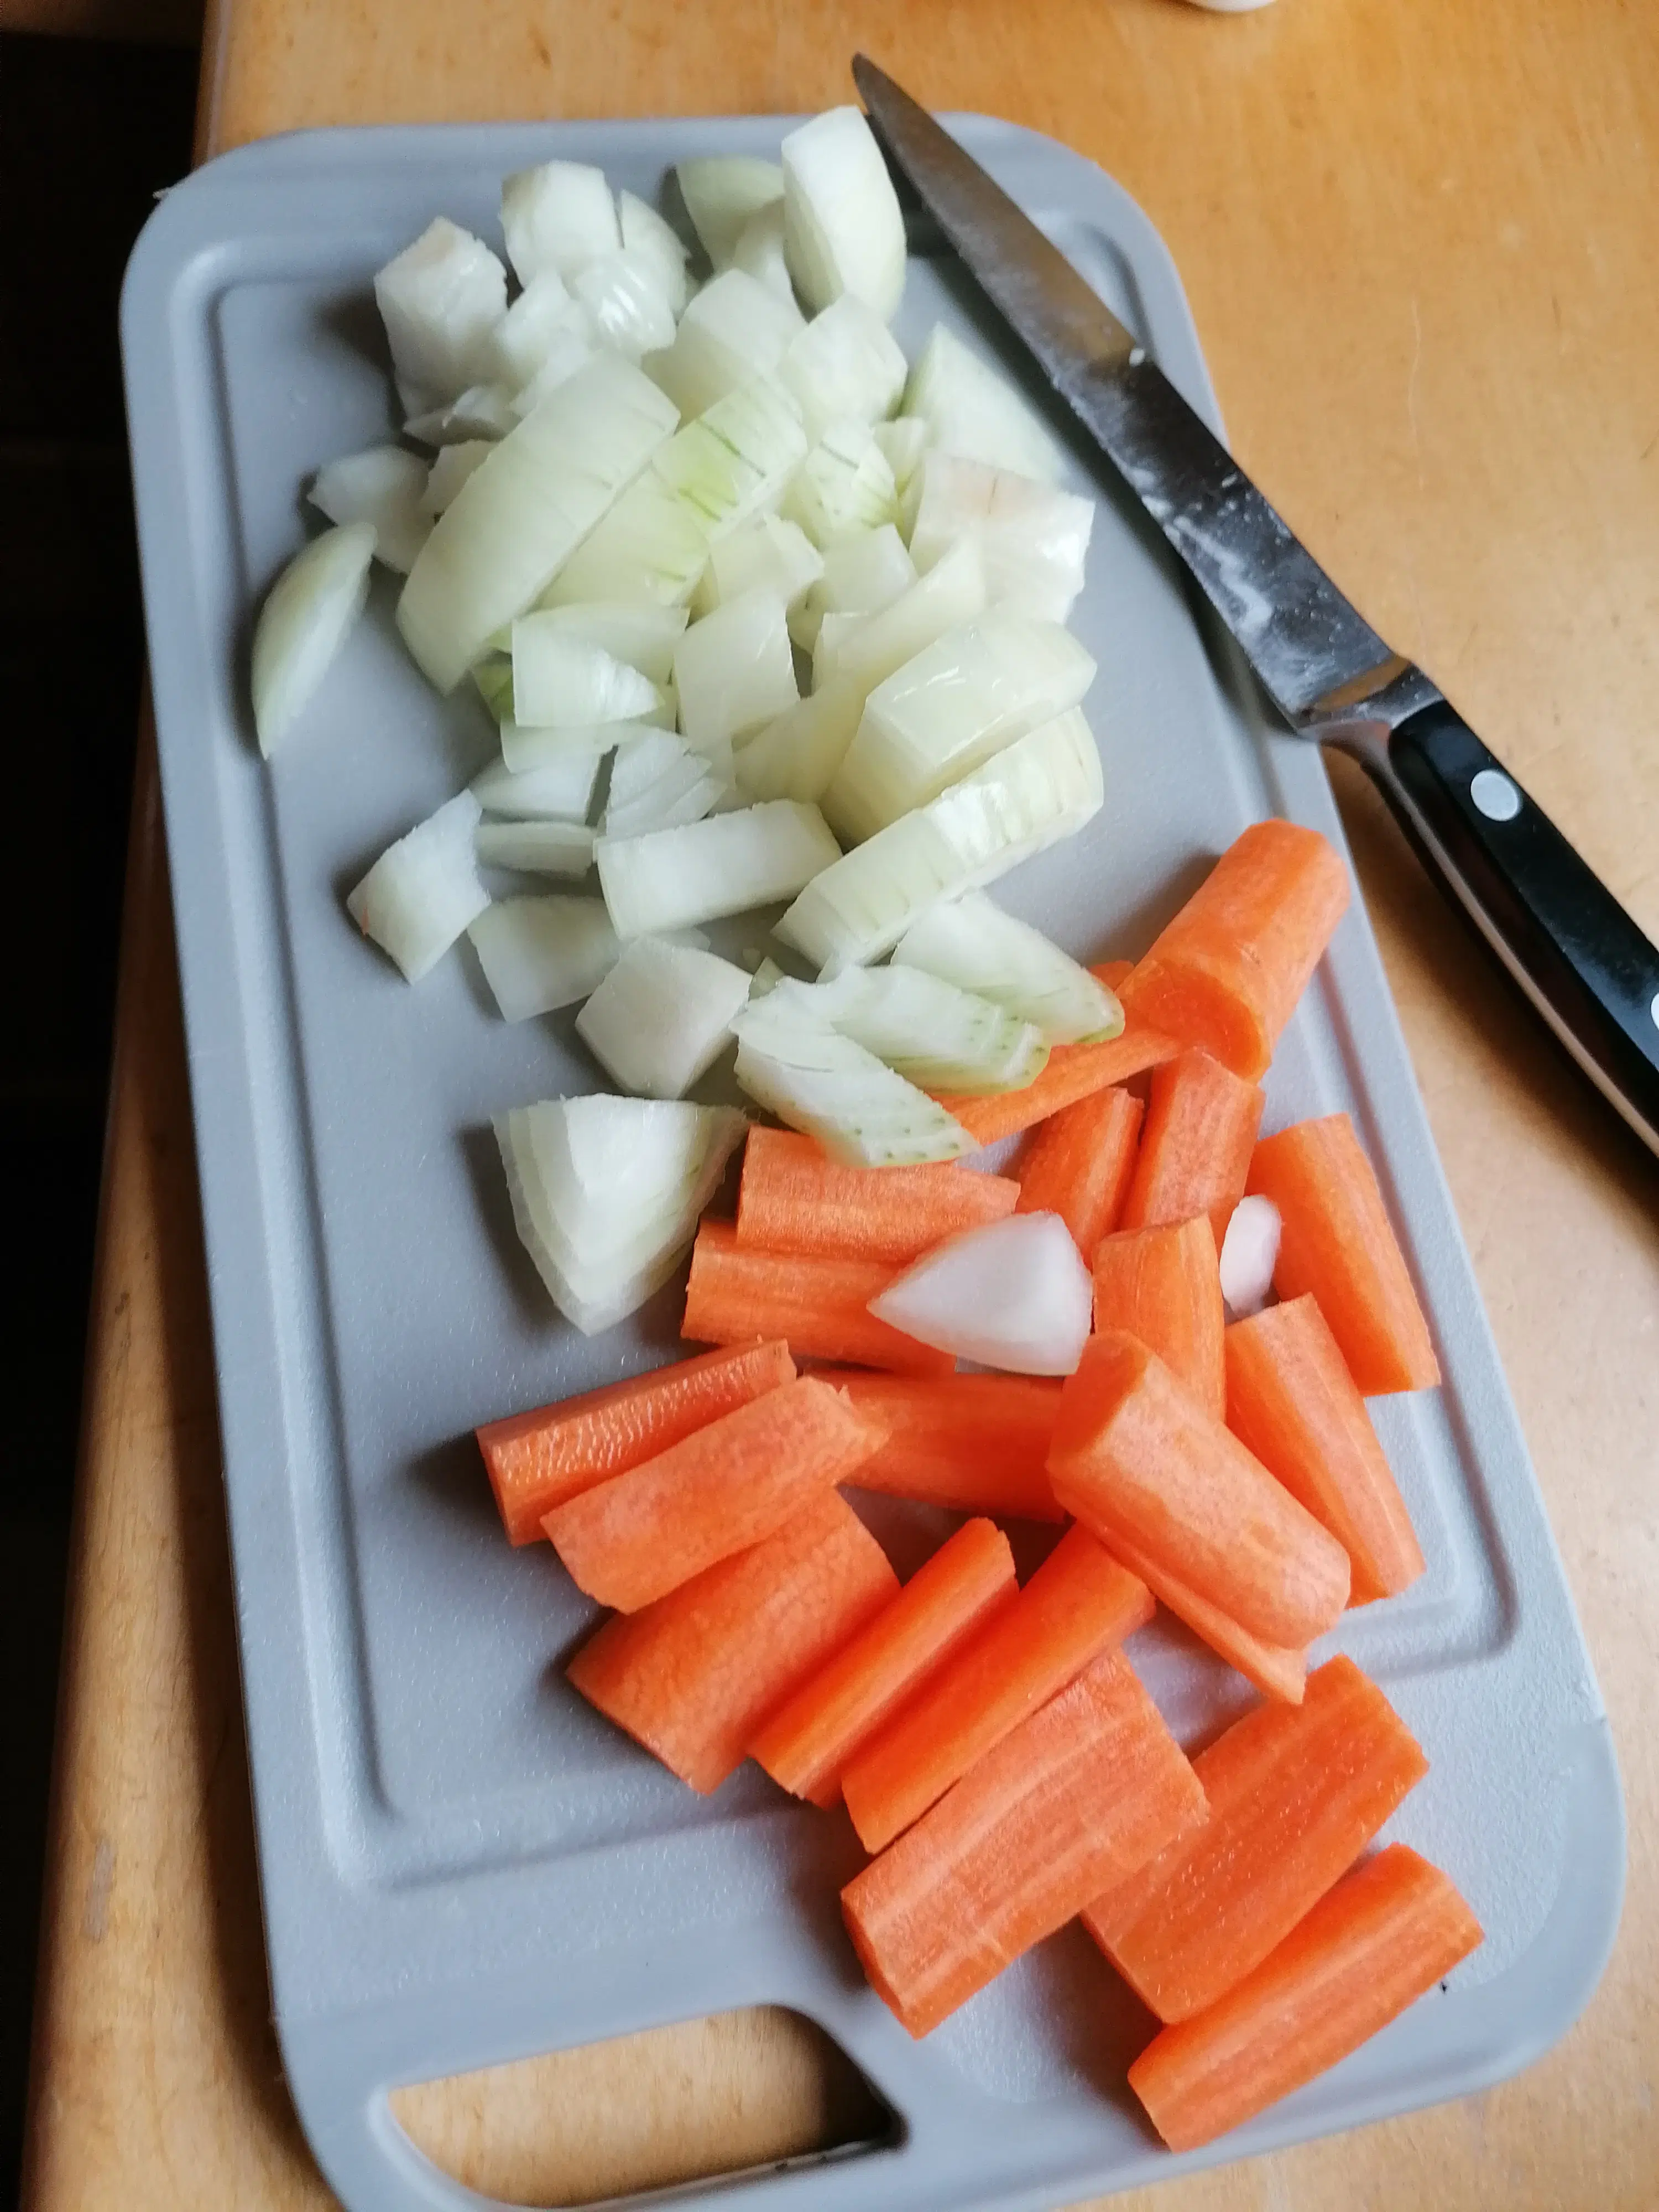 Zwiebel schälen und fein hacken. Karotten auch schälen und in längliche Spalten schneiden. 